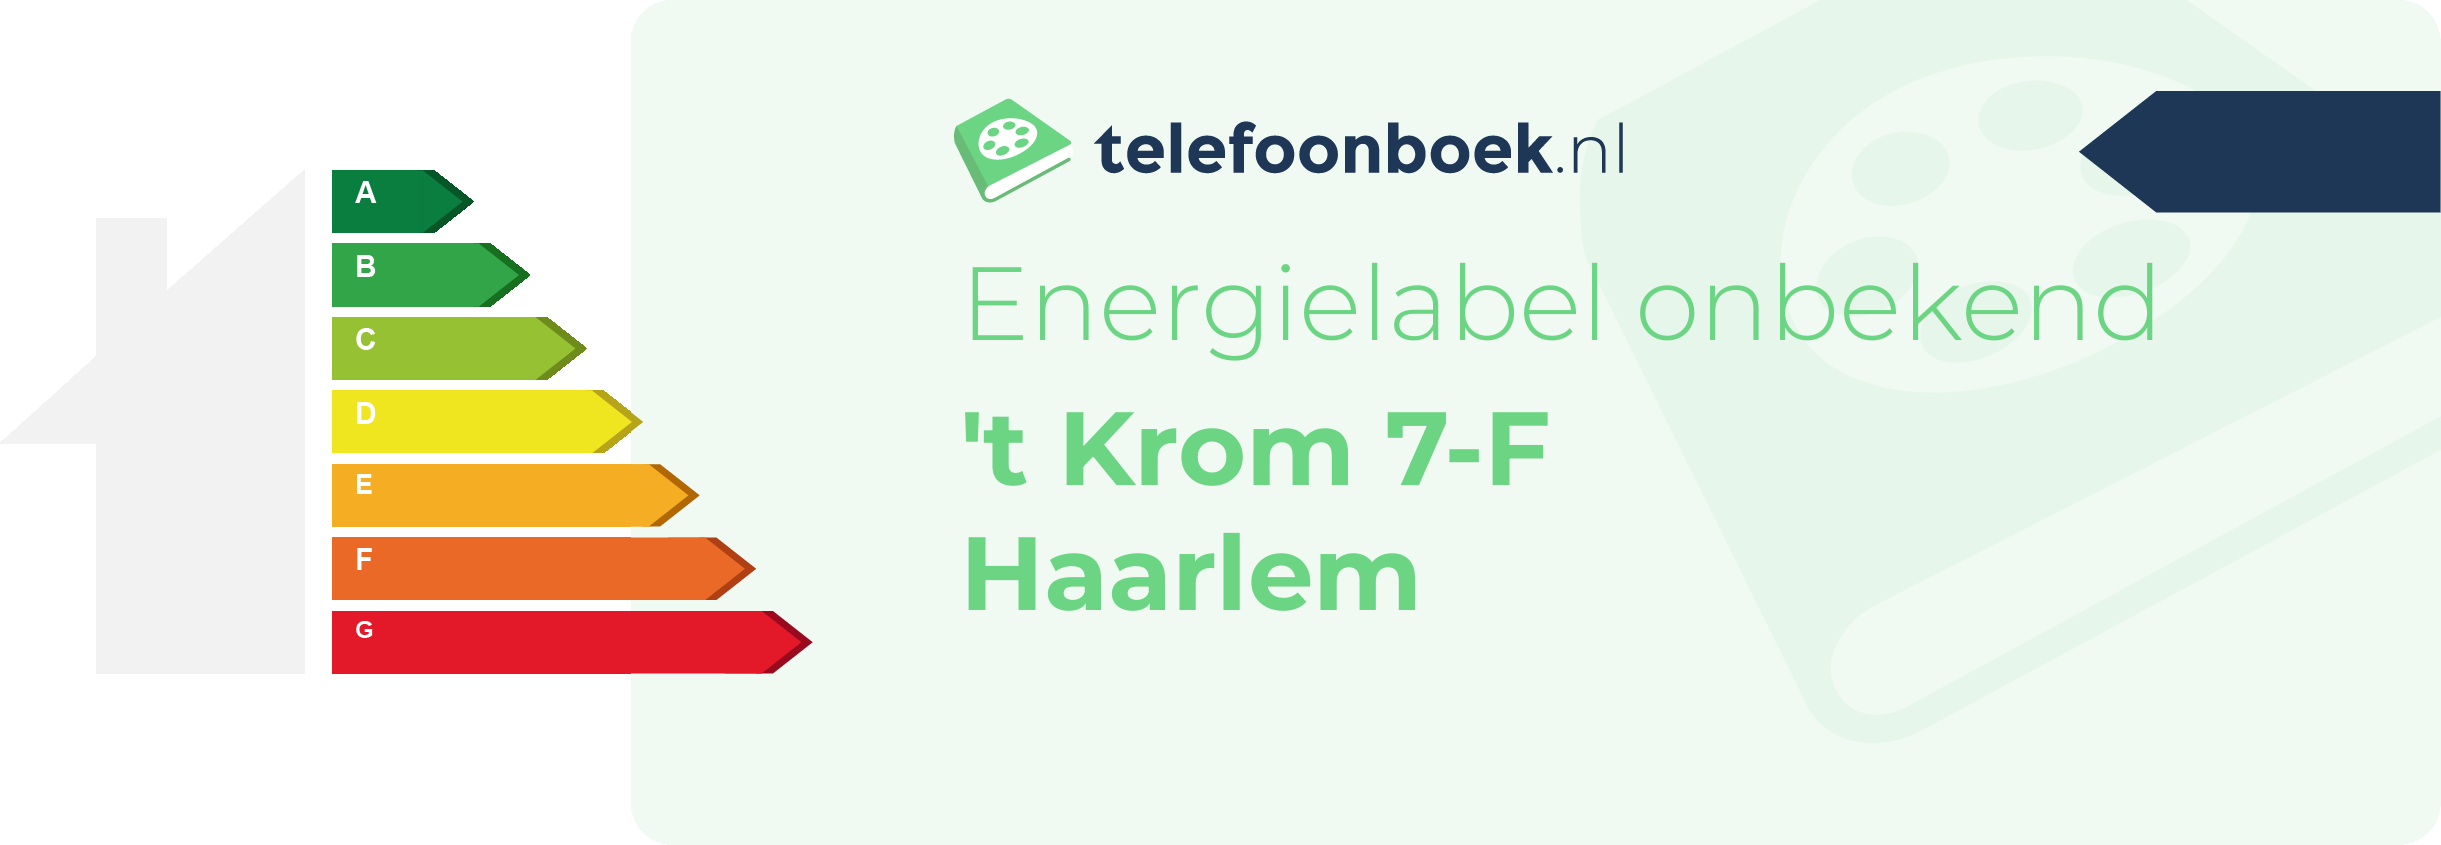 Energielabel 't Krom 7-F Haarlem